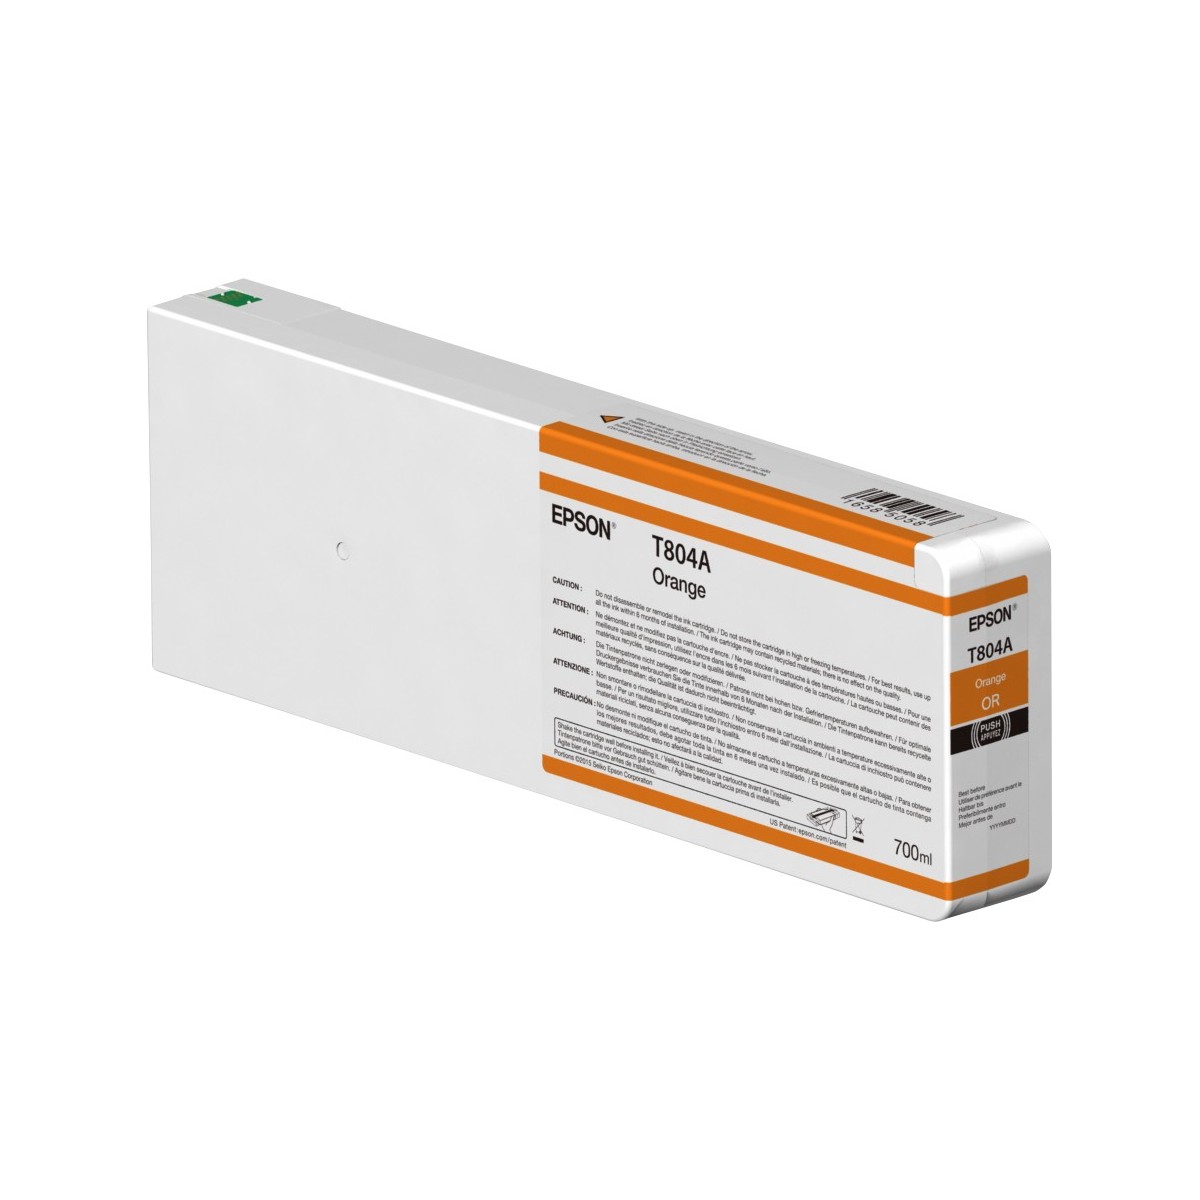 Epson Singlepack Orange T804A00 UltraChrome HDX 700ml - Pigment-based ink - 700 ml - 1 pc(s)